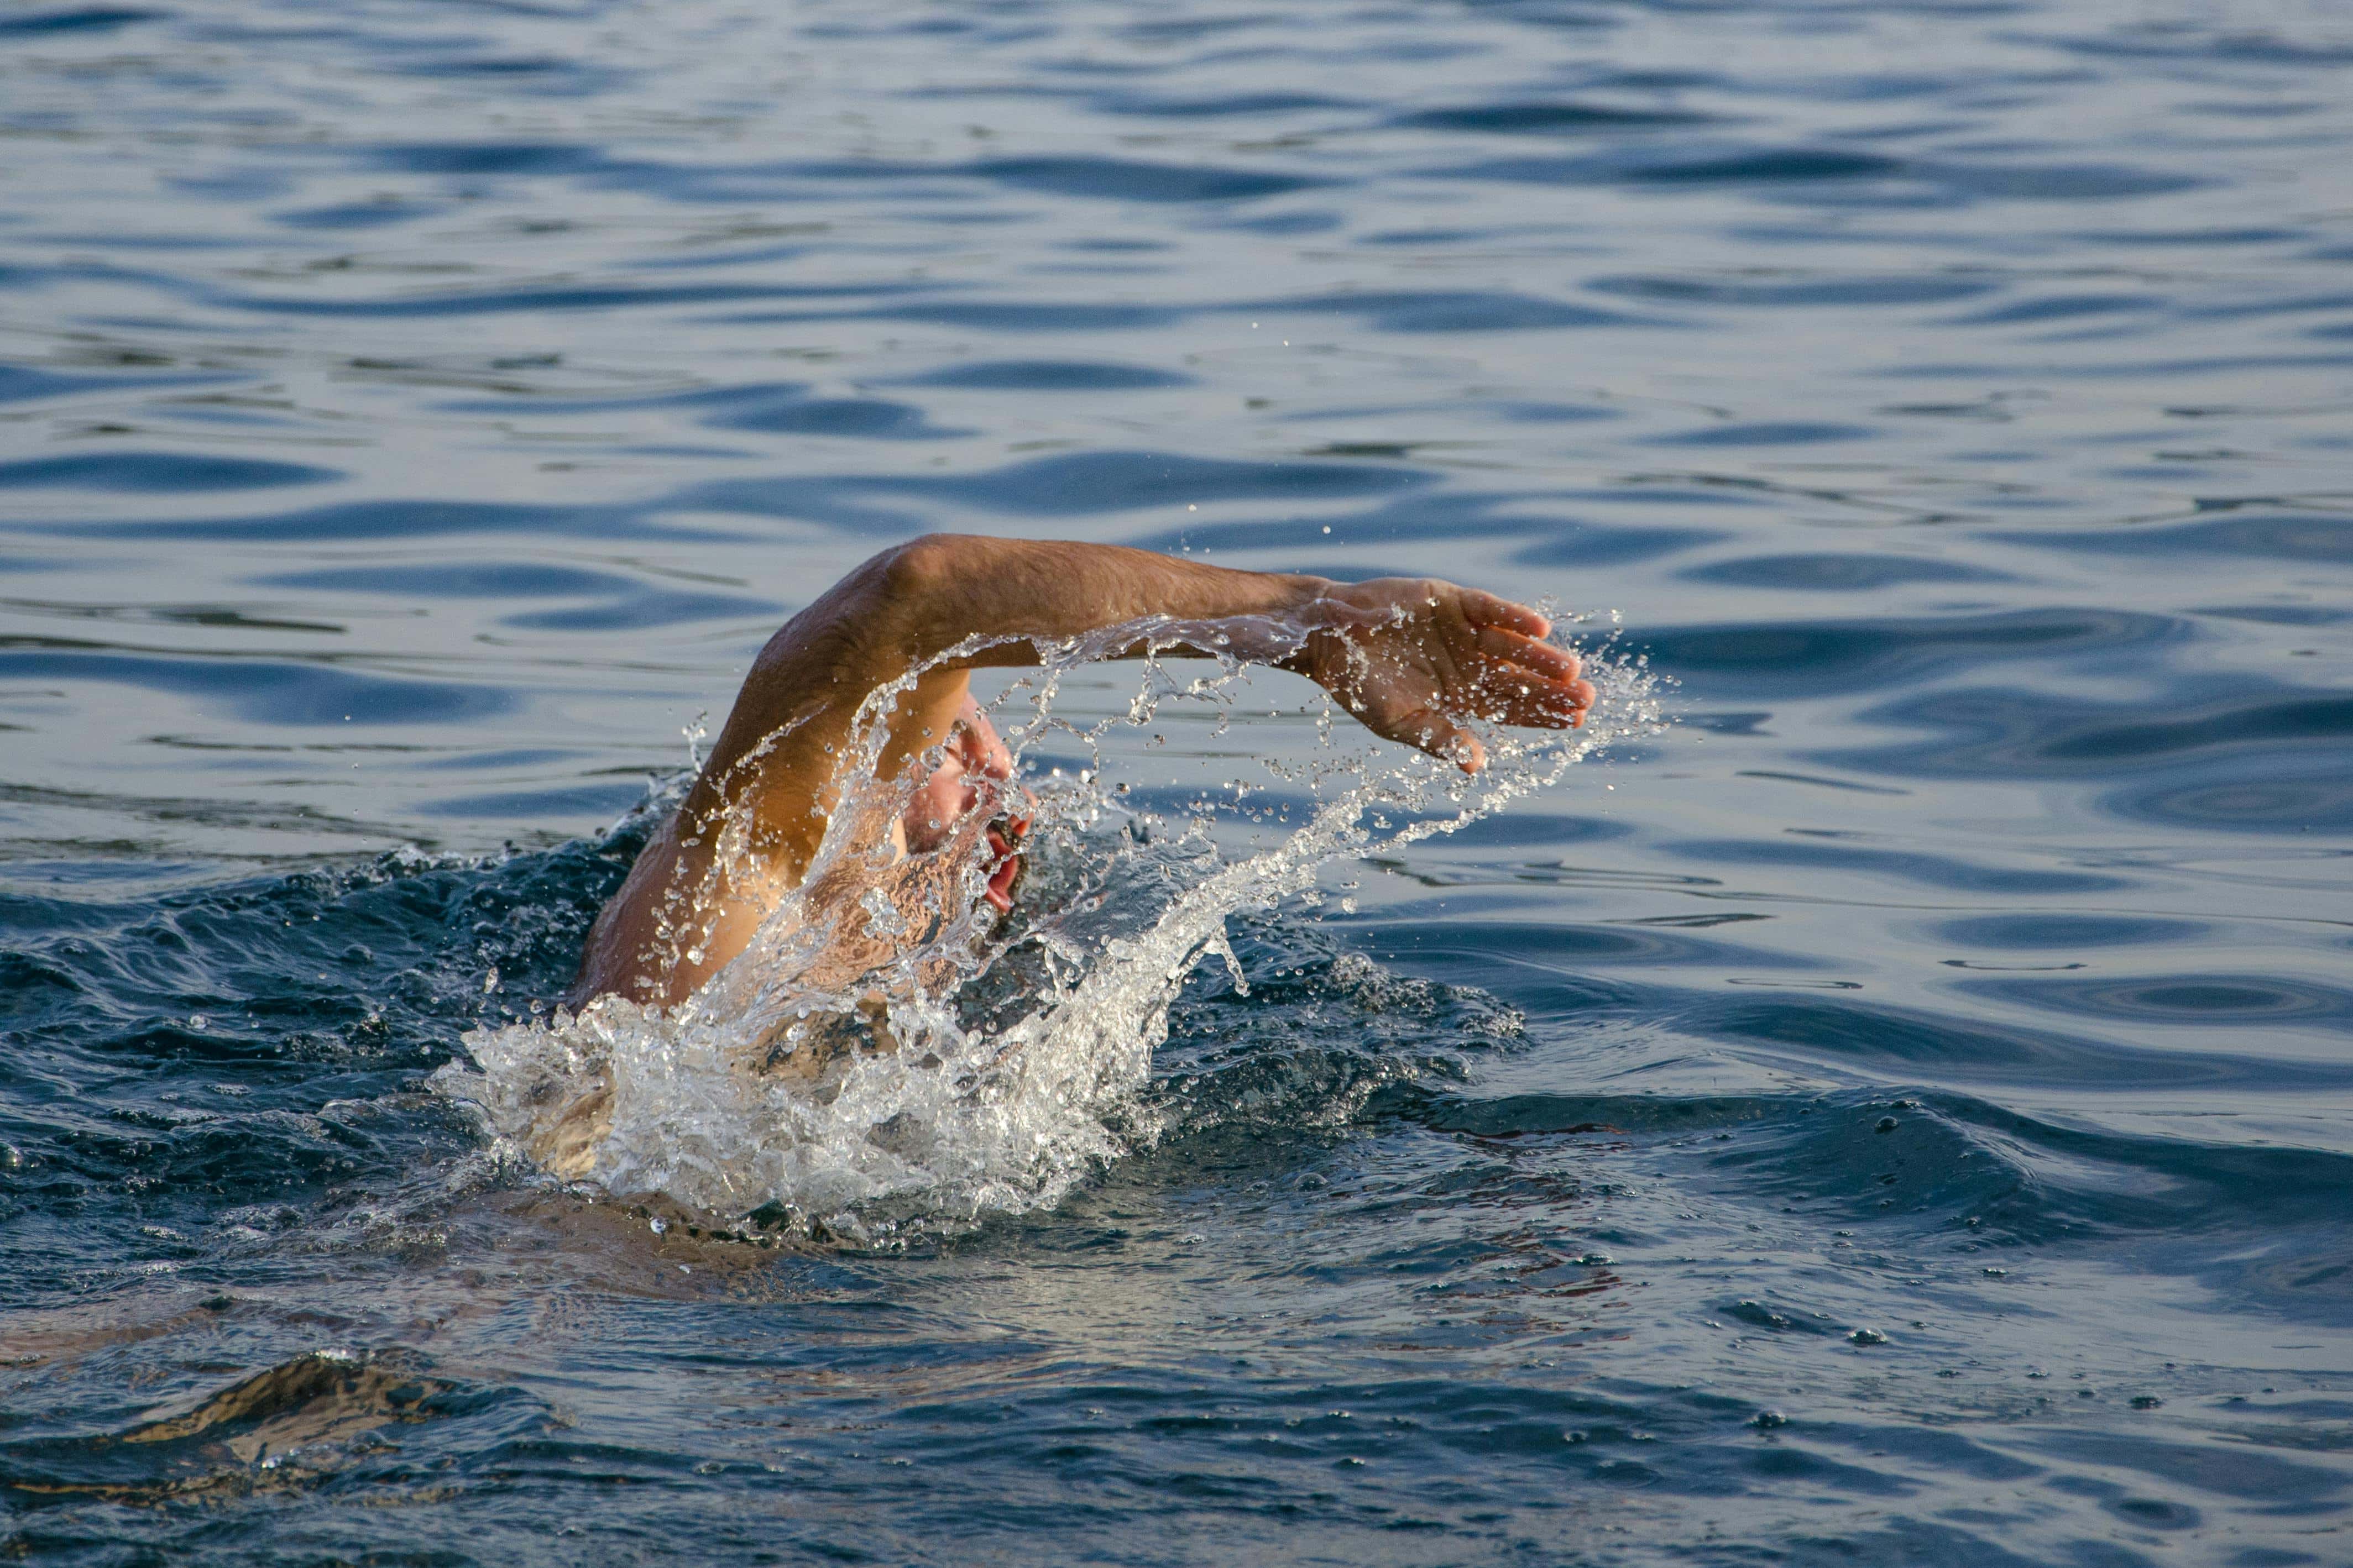 Zwemmen in open water: waar moet u rekening mee houden?